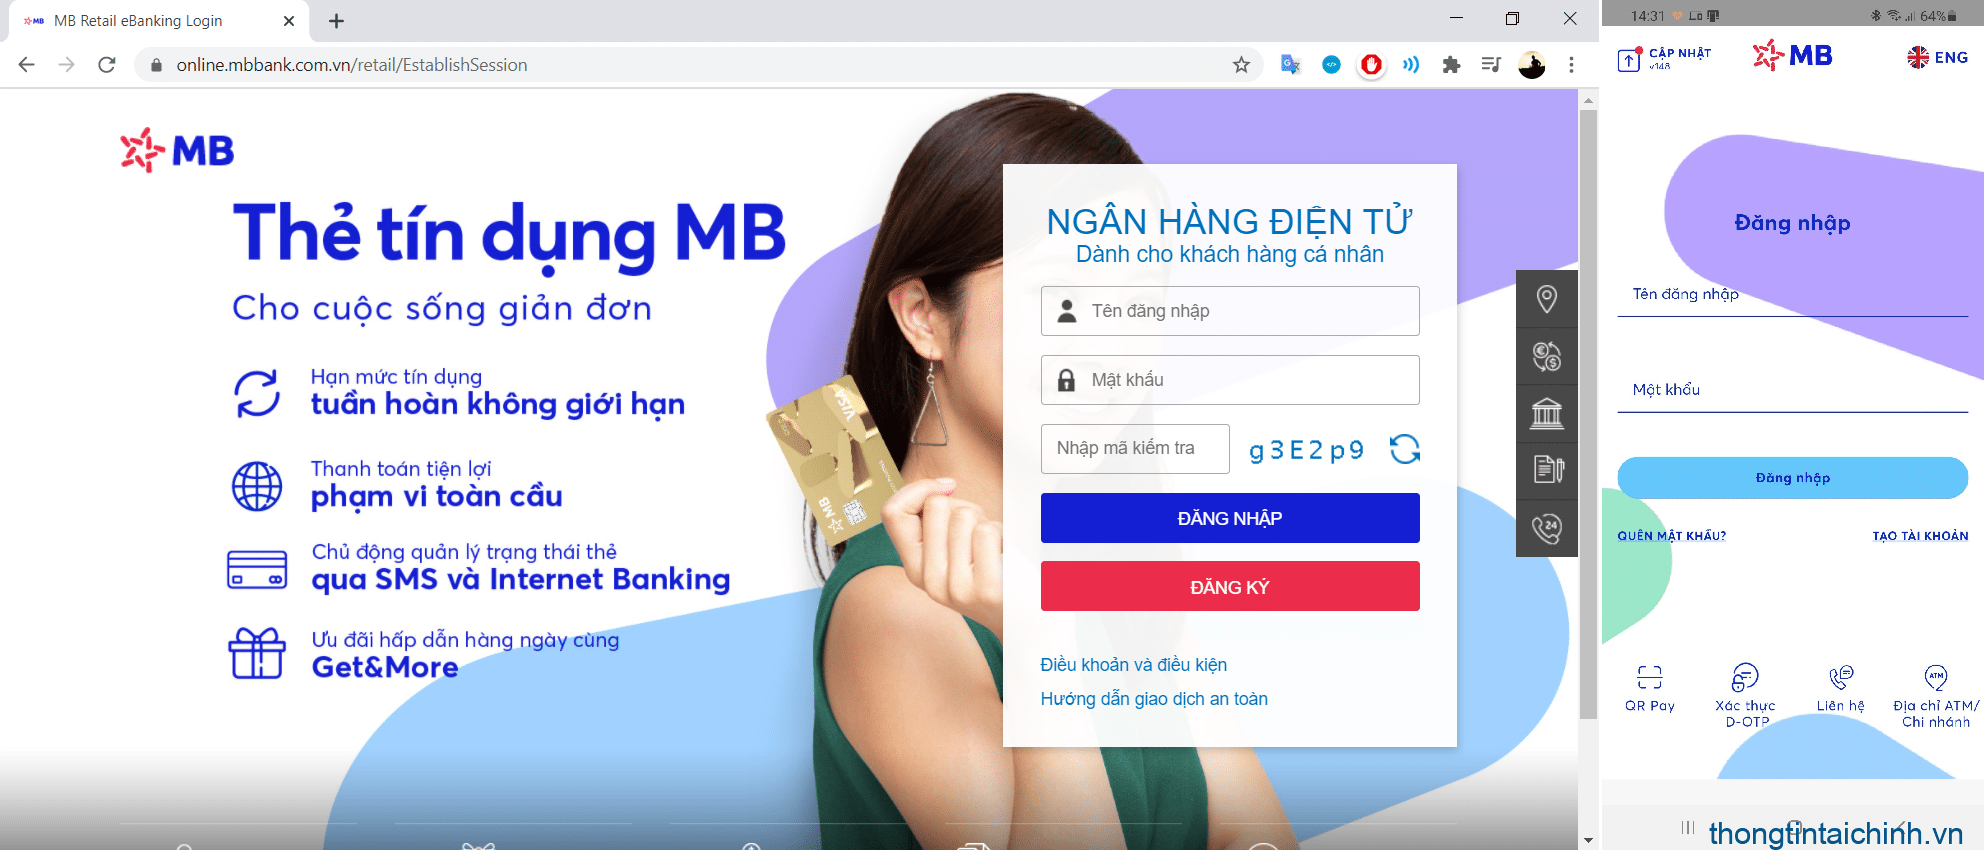 Phí nạp tiền vào tài khoản MBBank online phụ thuộc vào mỗi ngân hàng quy định